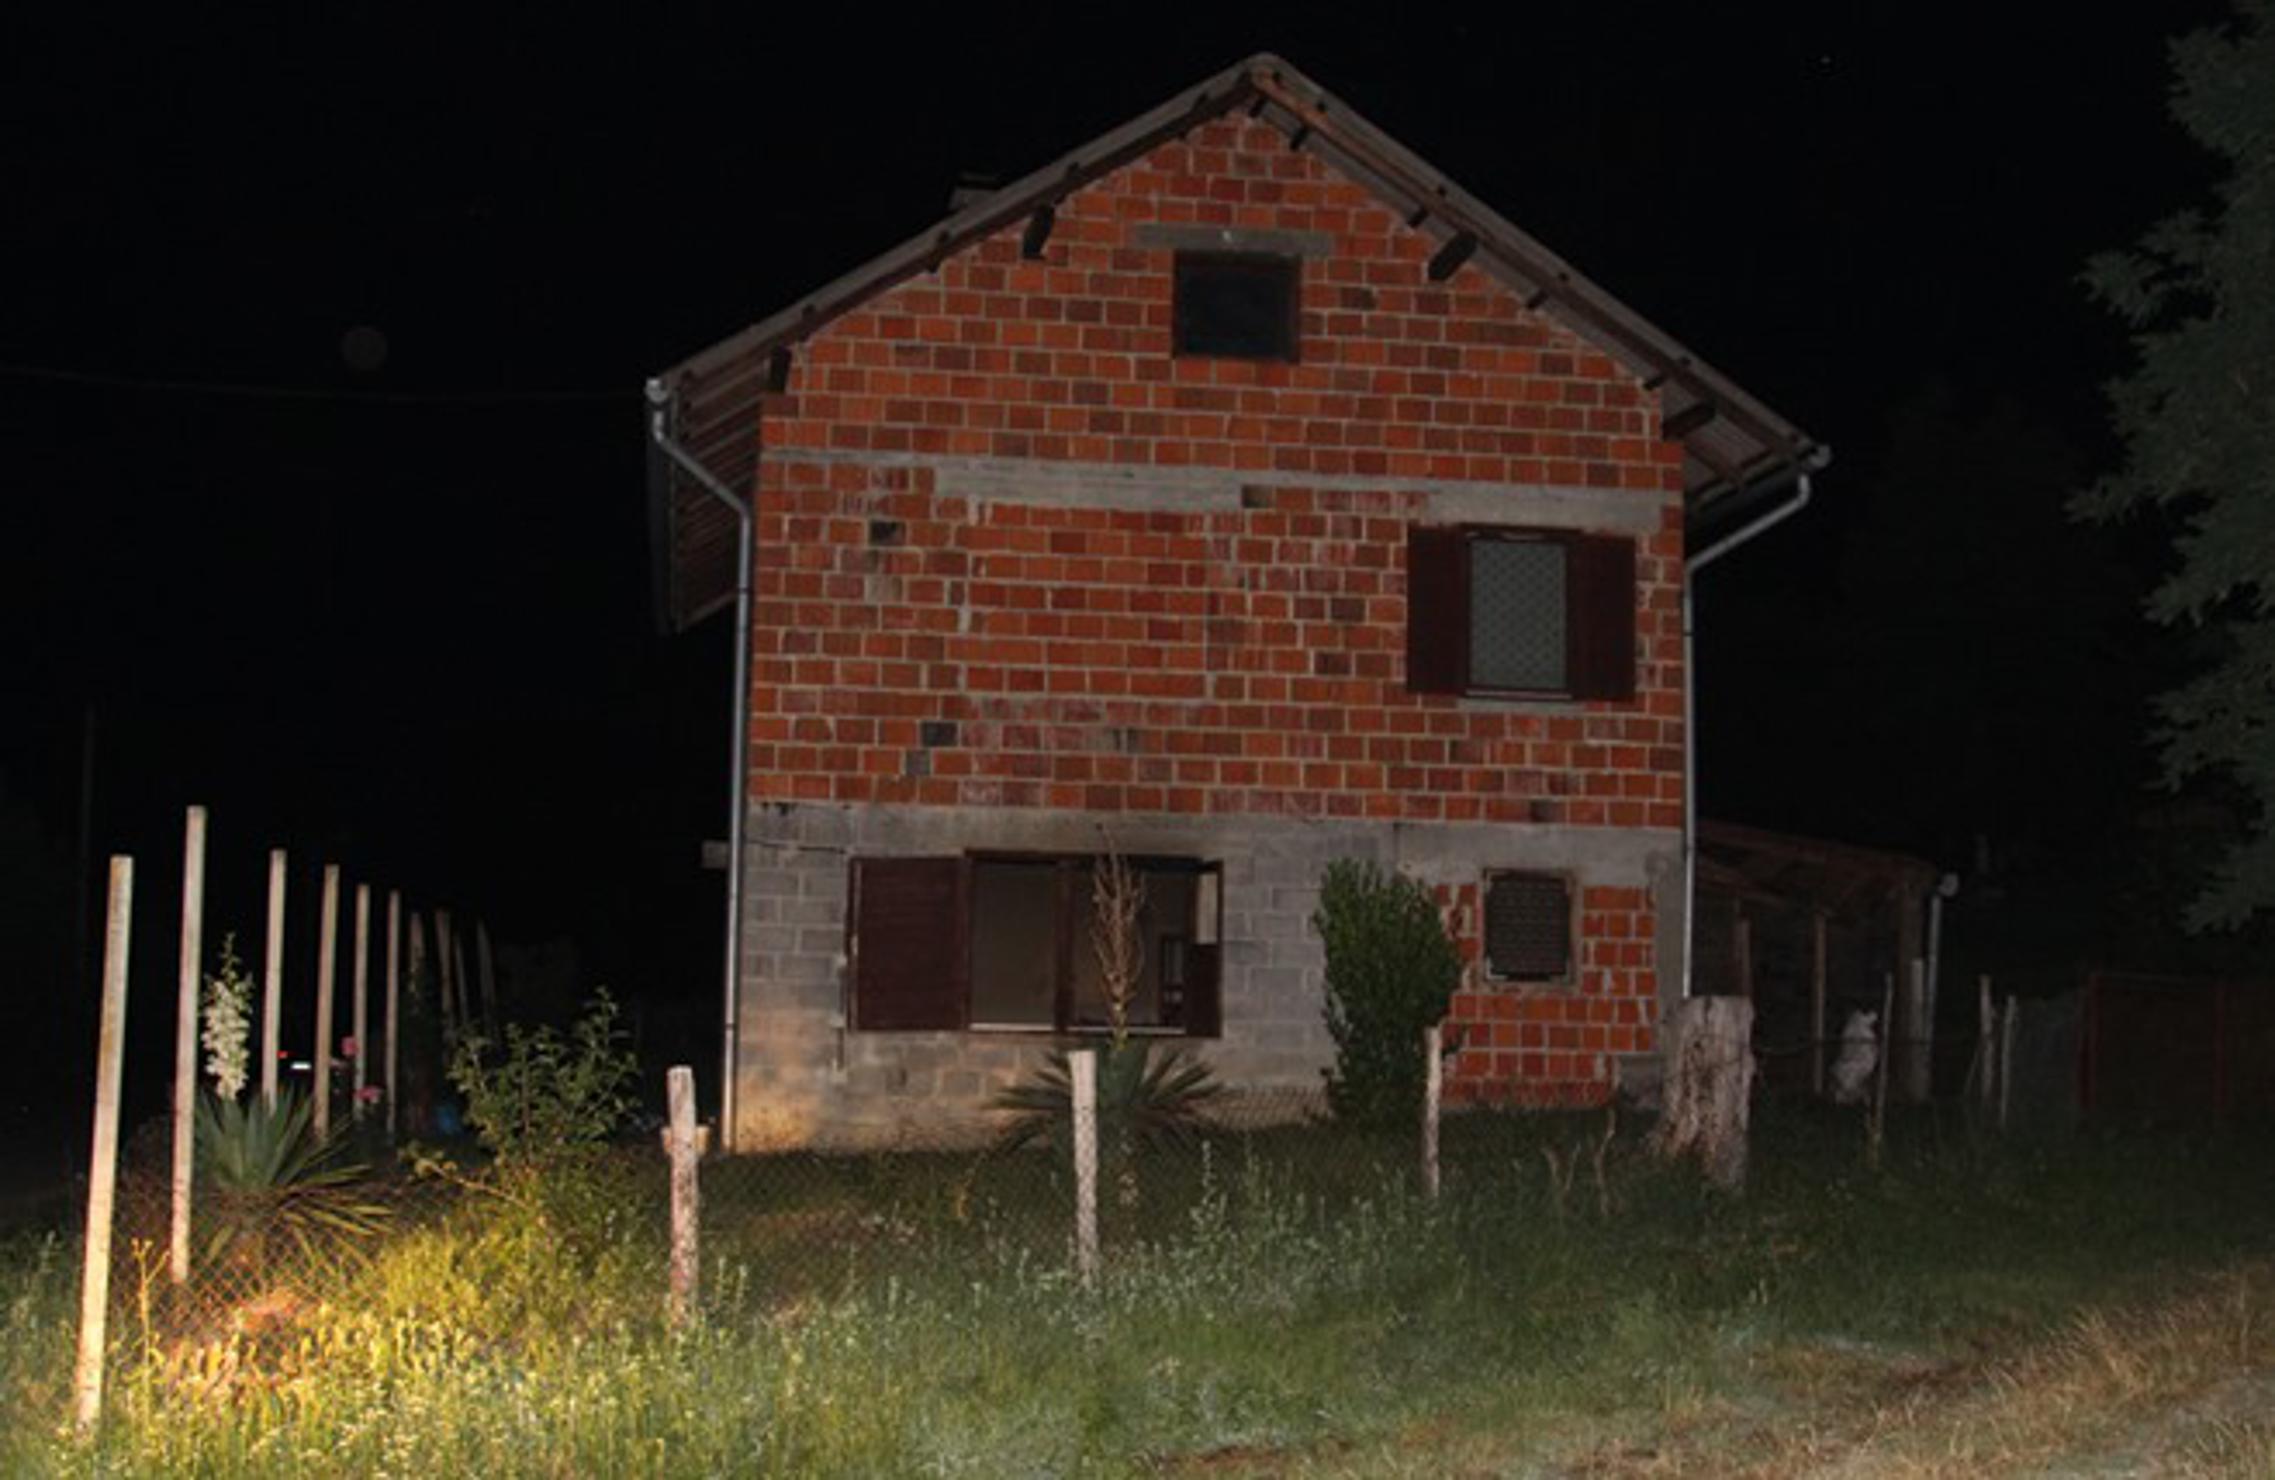 Obiteljska kuća, u Doljancima, u kojoj je došlo do požara